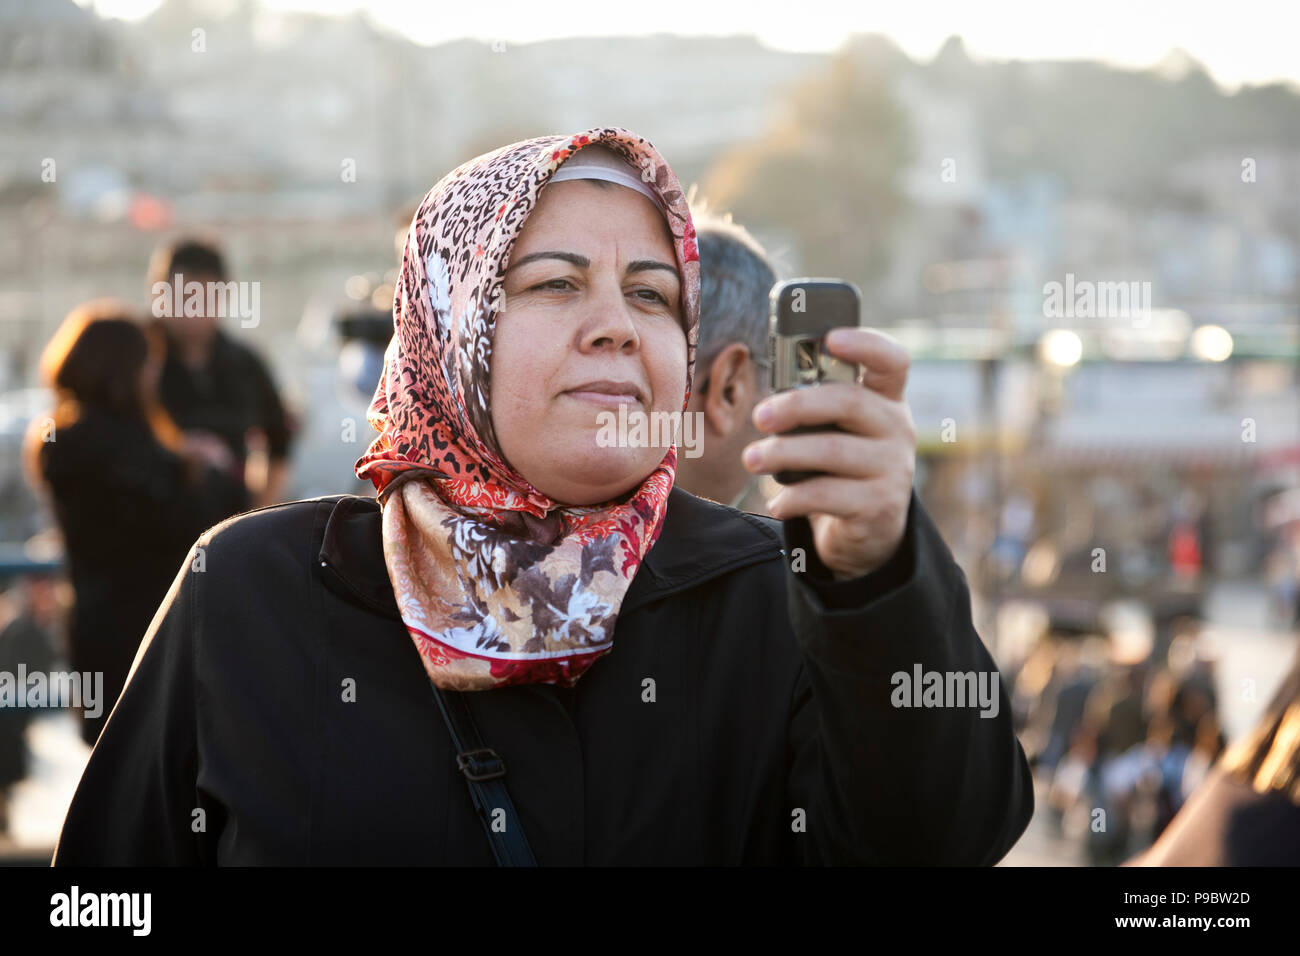 Istanbul, Türkei - 6 November 2009: Frau mit Kopftuch mit Ihrem Mobiltelefon ein Foto während der Galata Brücke in Istanbul zu nehmen Stockfoto